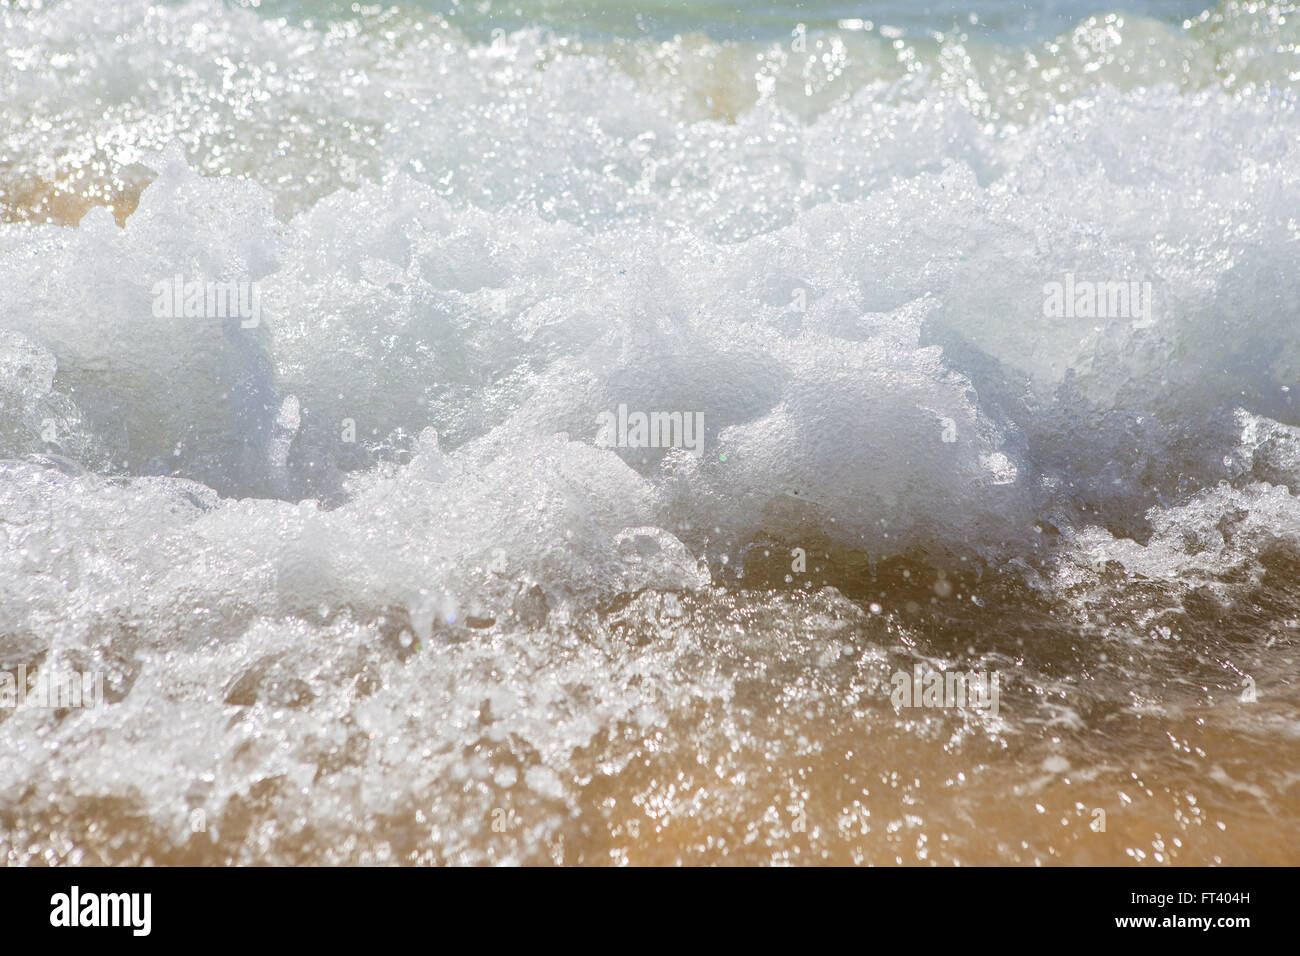 Wave splashes on sunny day Stock Photo